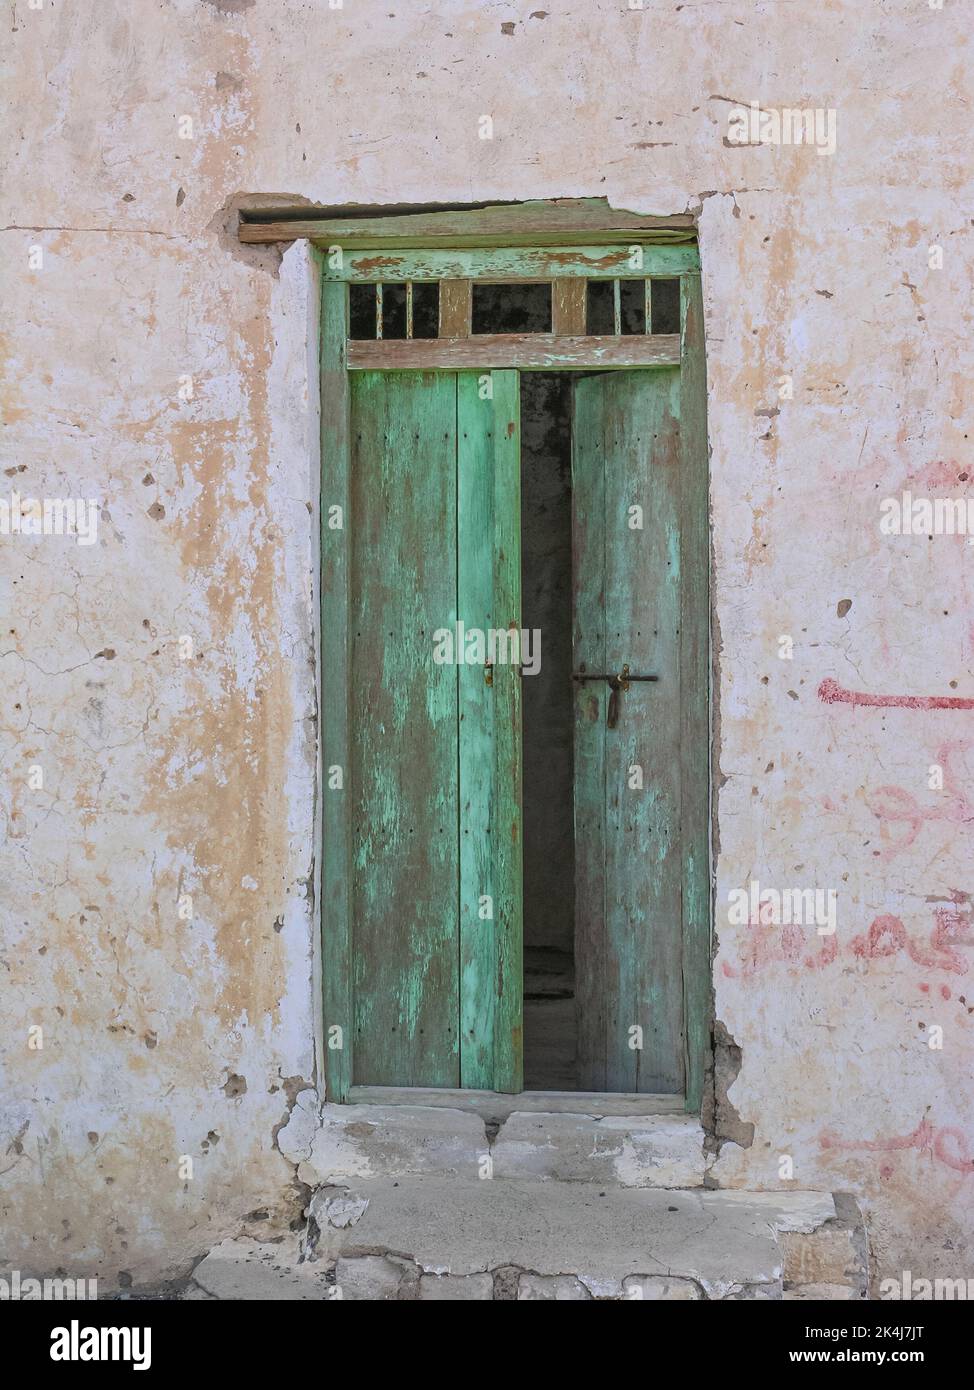 L'ingresso ad una vecchia mensa fatiscente a Tawi fili nell'emirato di Sharjah negli Emirati Arabi Uniti. Foto Stock